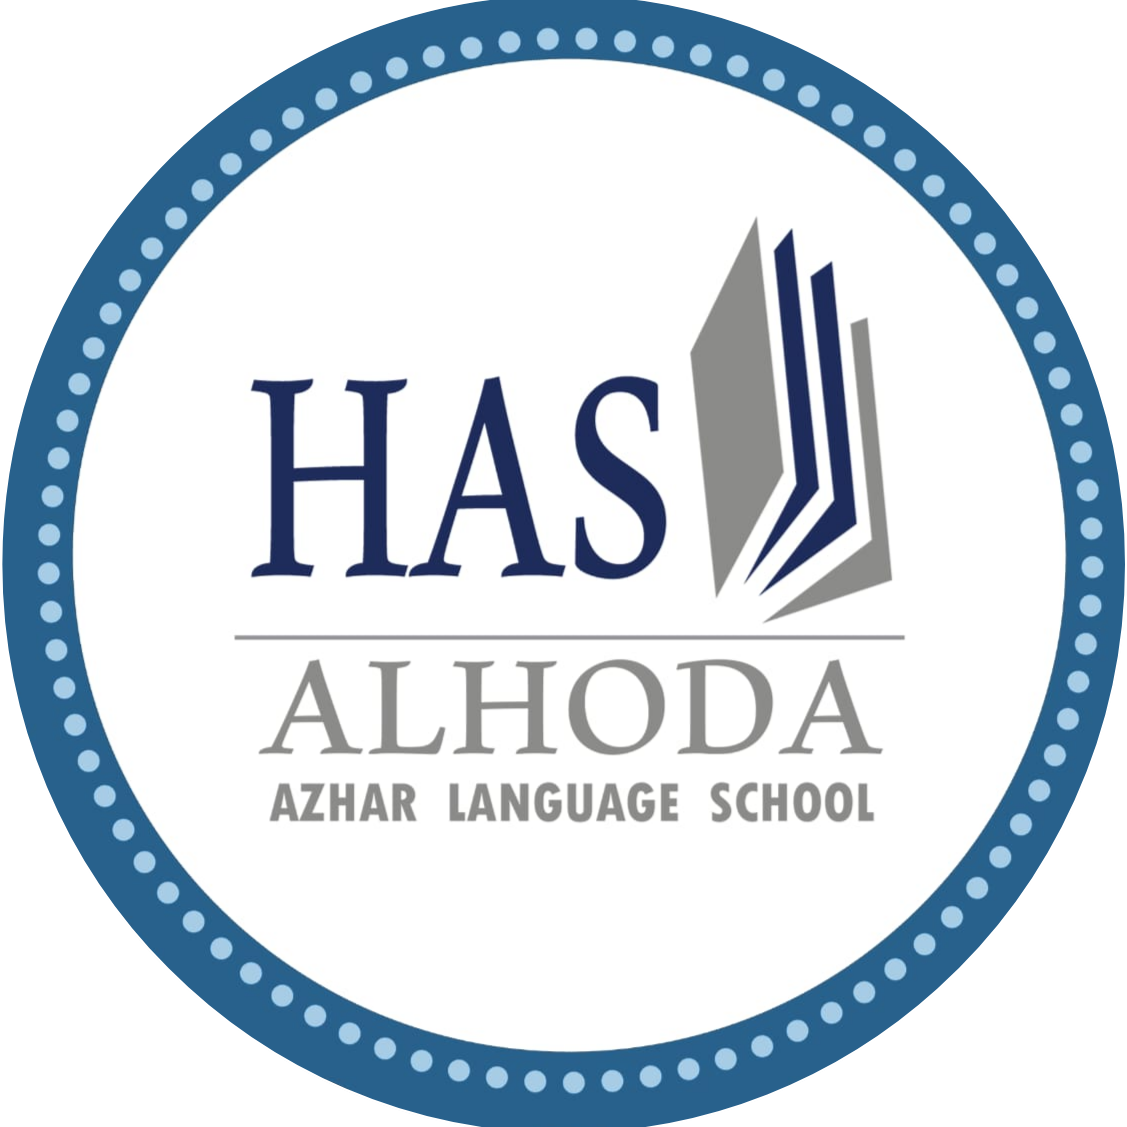 Al Hoda Azhar Language School